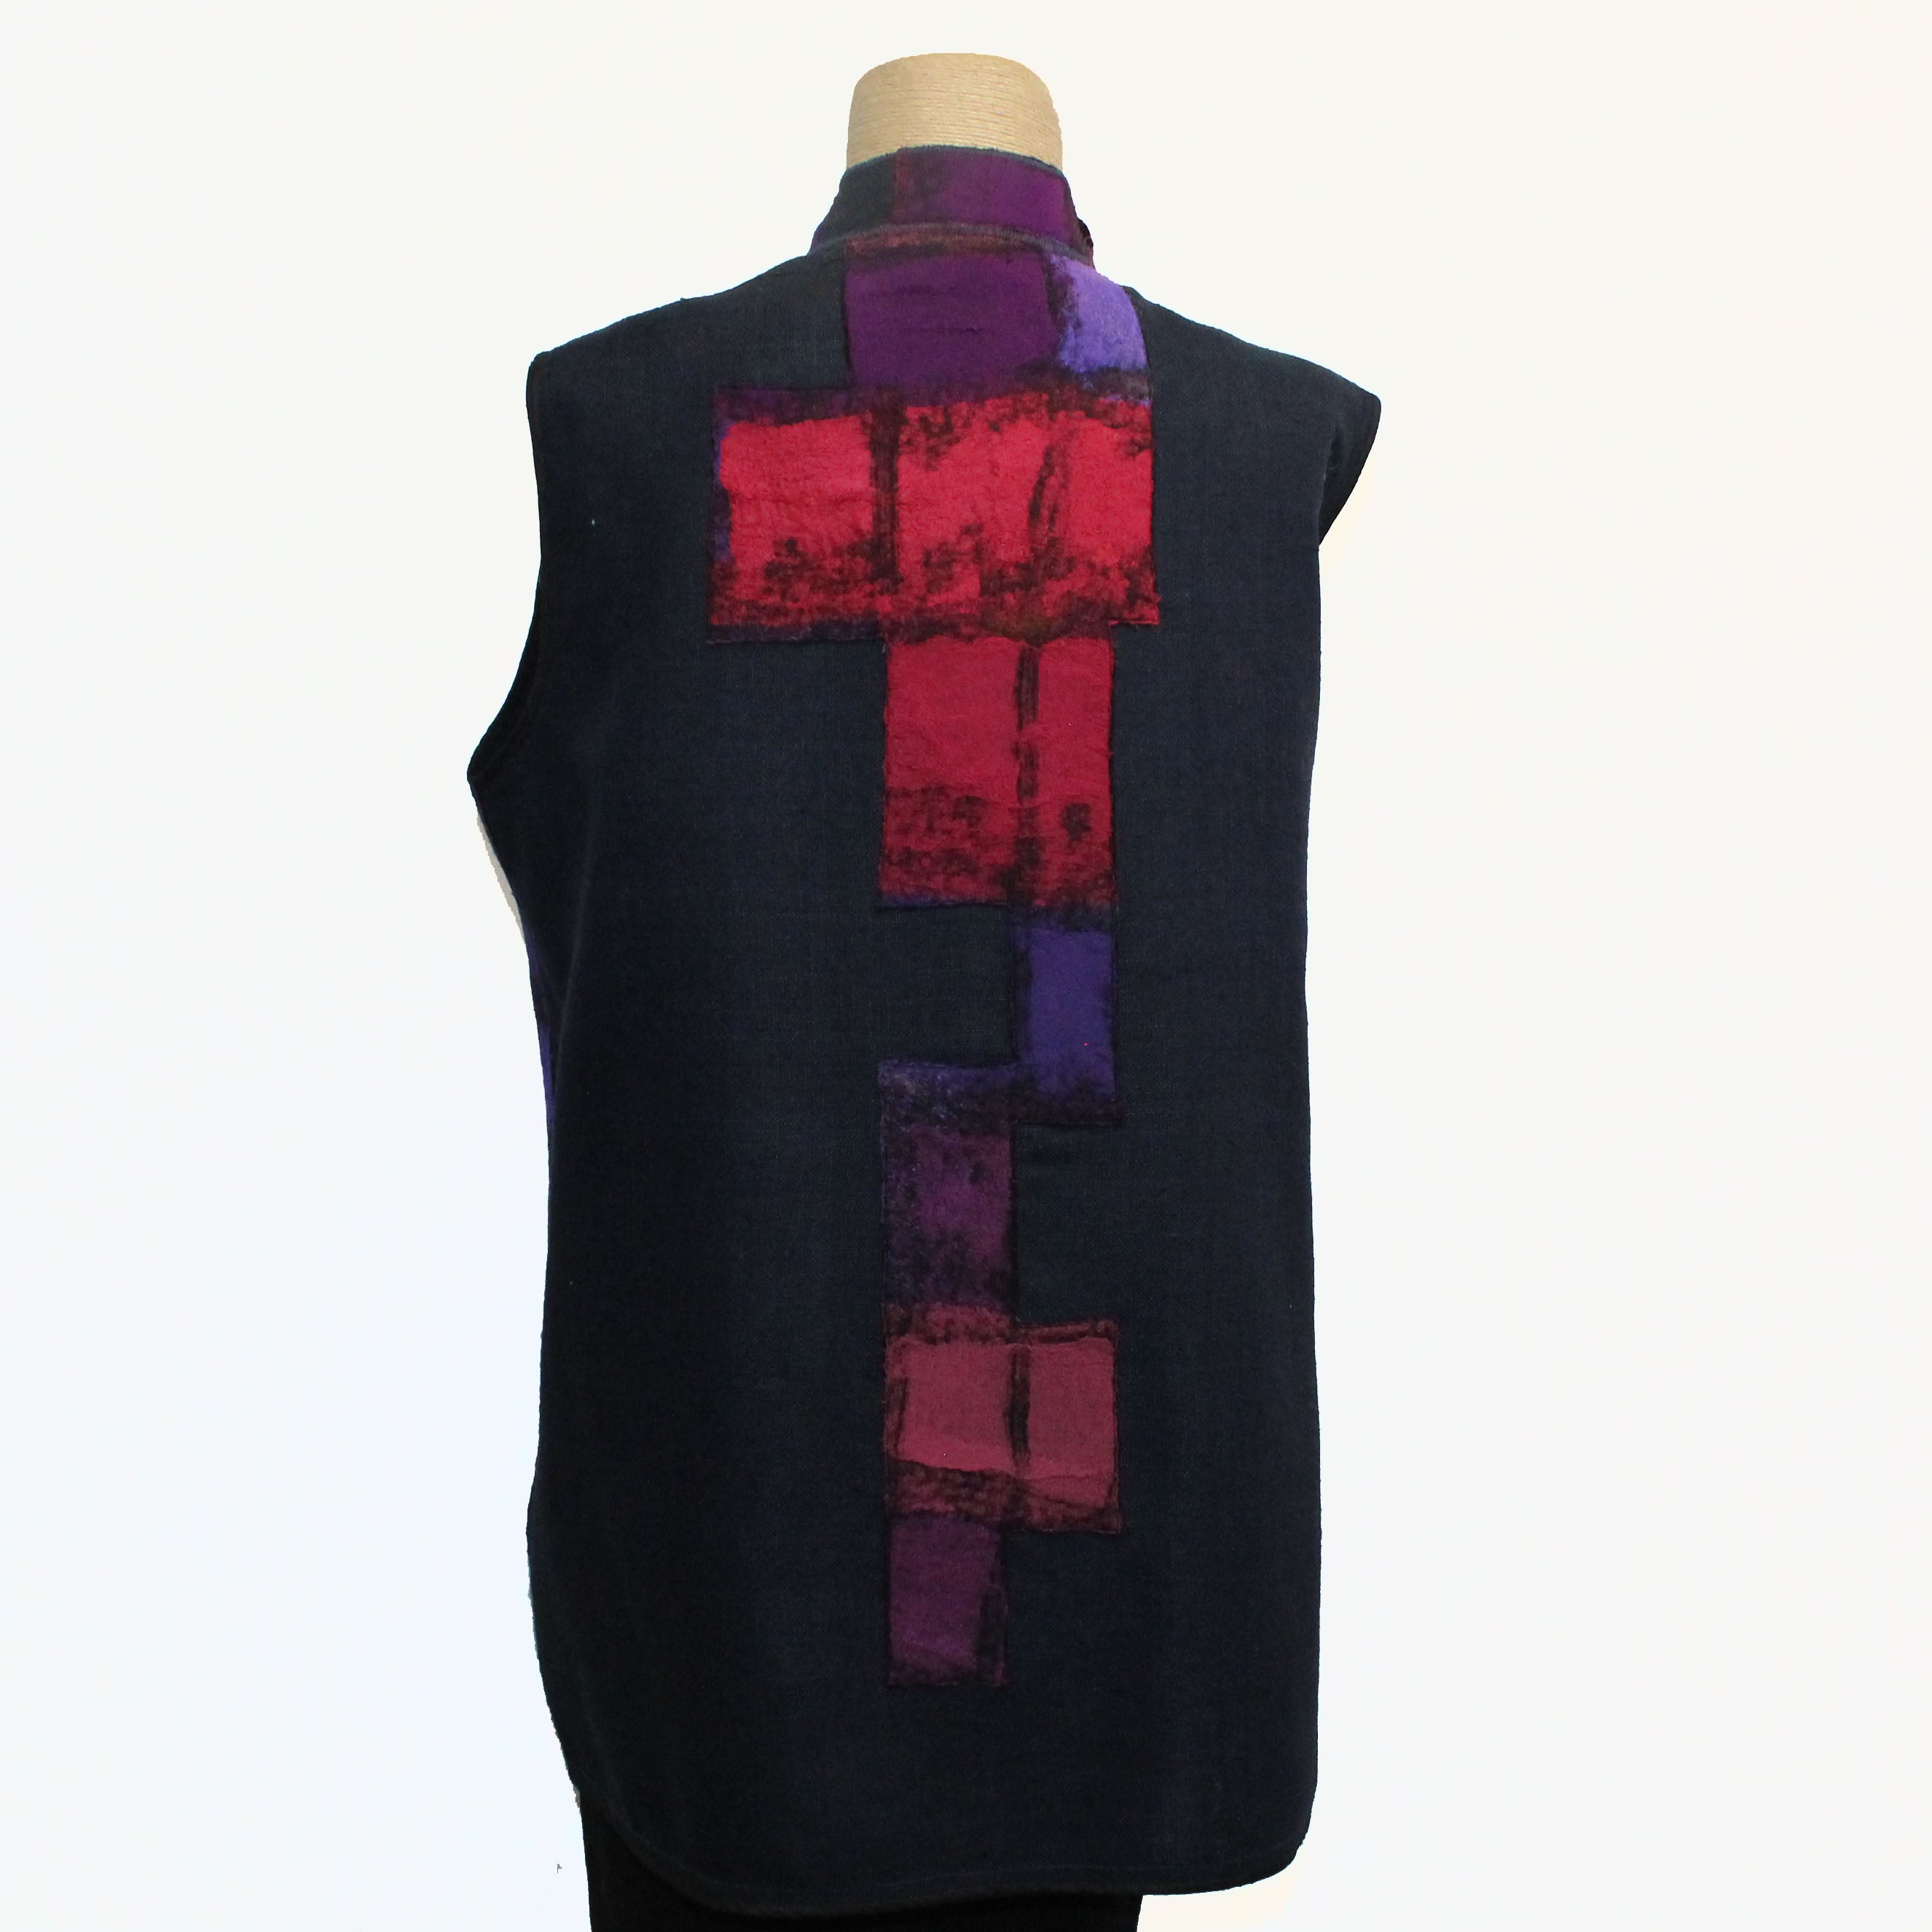 Maggy Pavlou Vest, Black/Red/Multi-Color, M